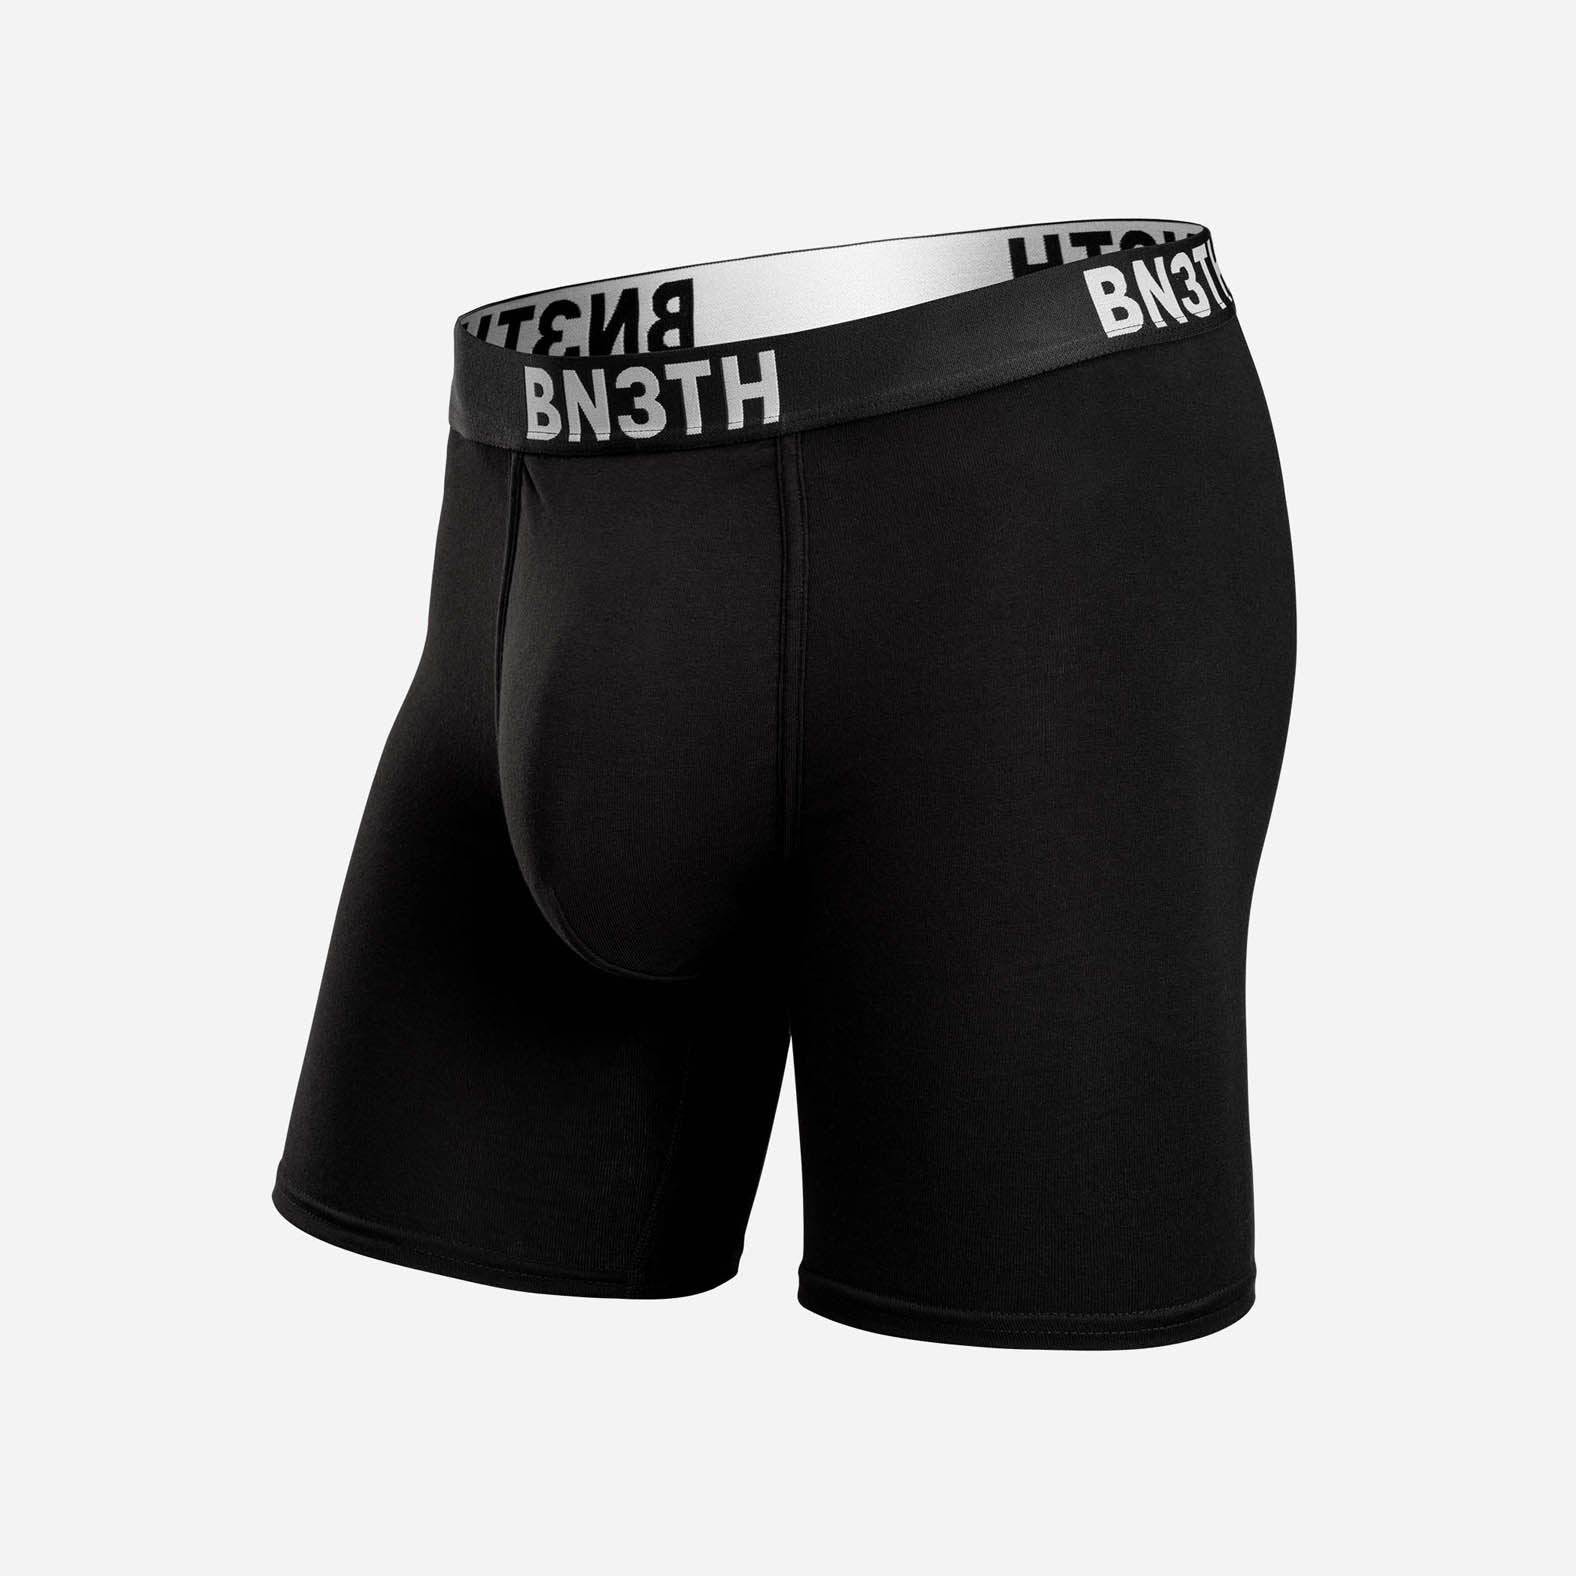 Outset Boxer Brief: Black  BN3TH Underwear –